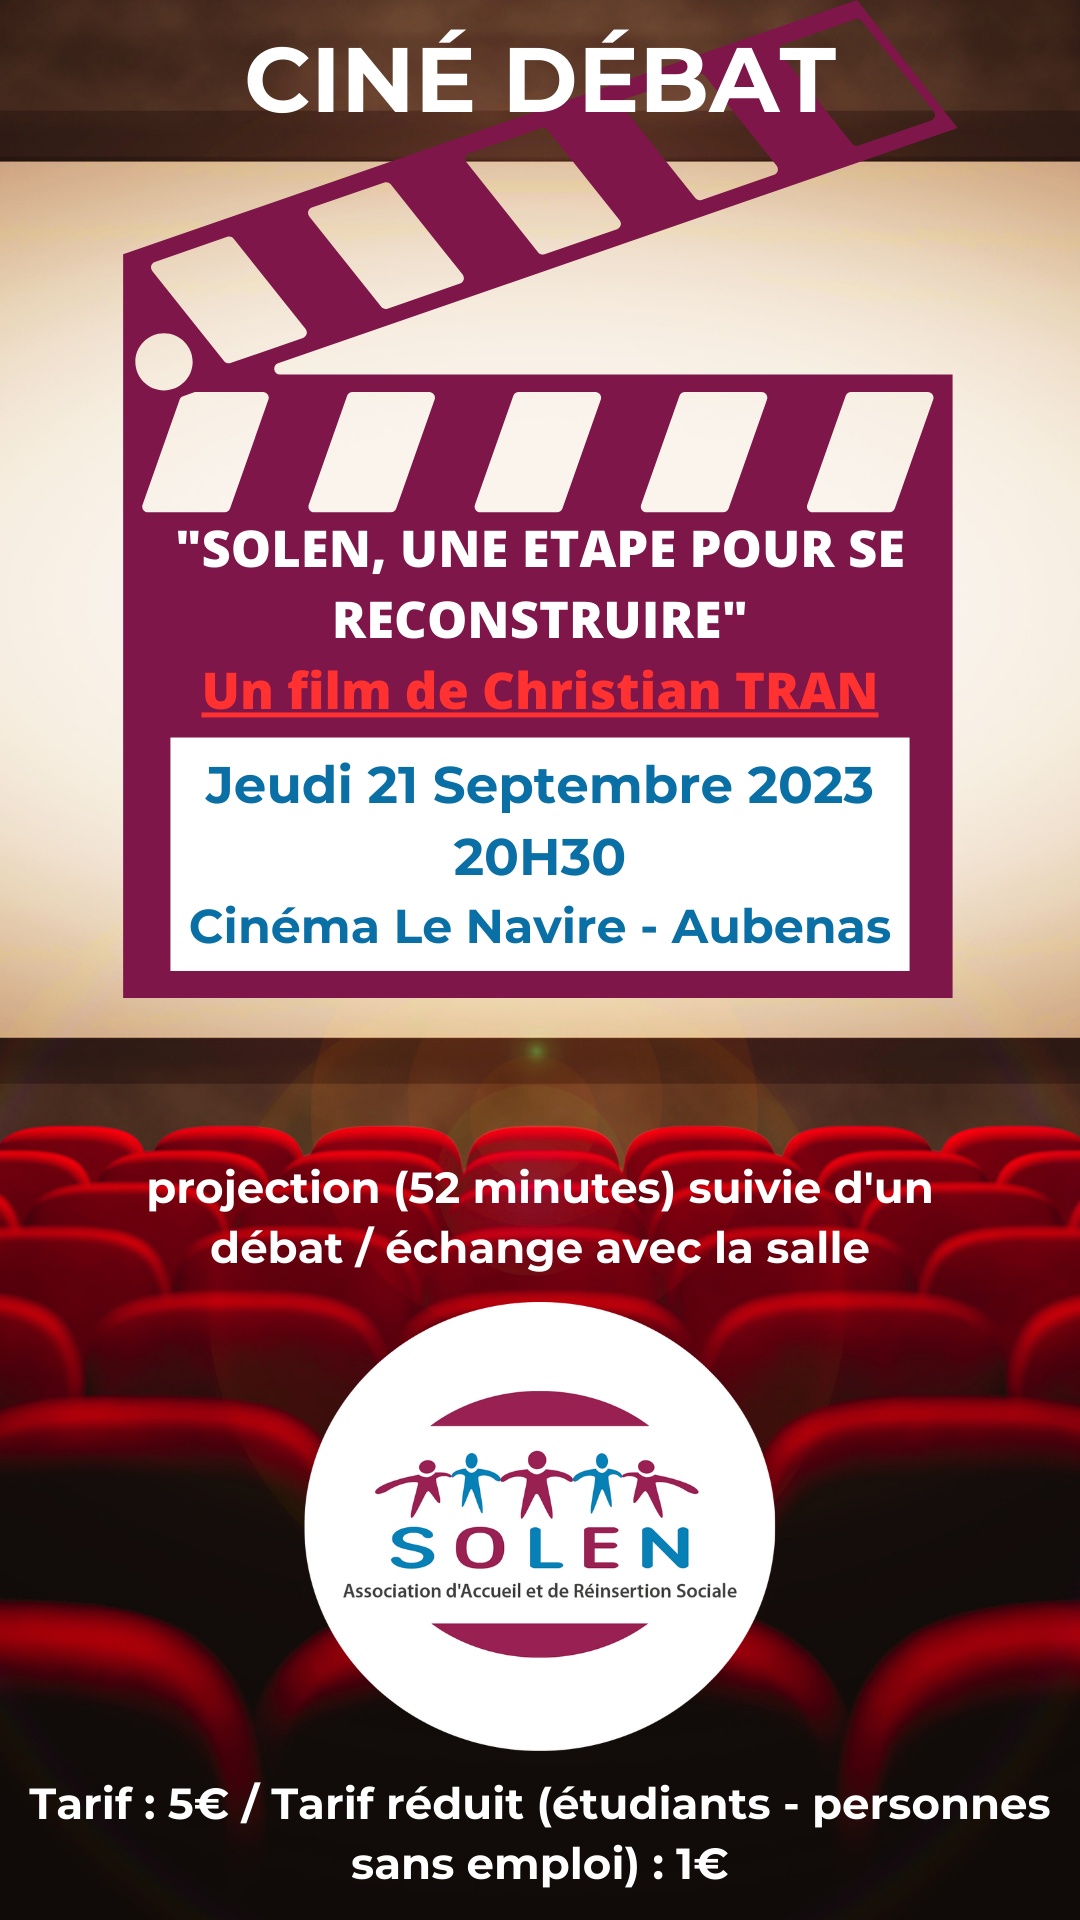 Lire la suite à propos de l’article Ciné débat jeudi 21 septembre 2023 à 20H30 au cinéma Le Navire à Aubenas